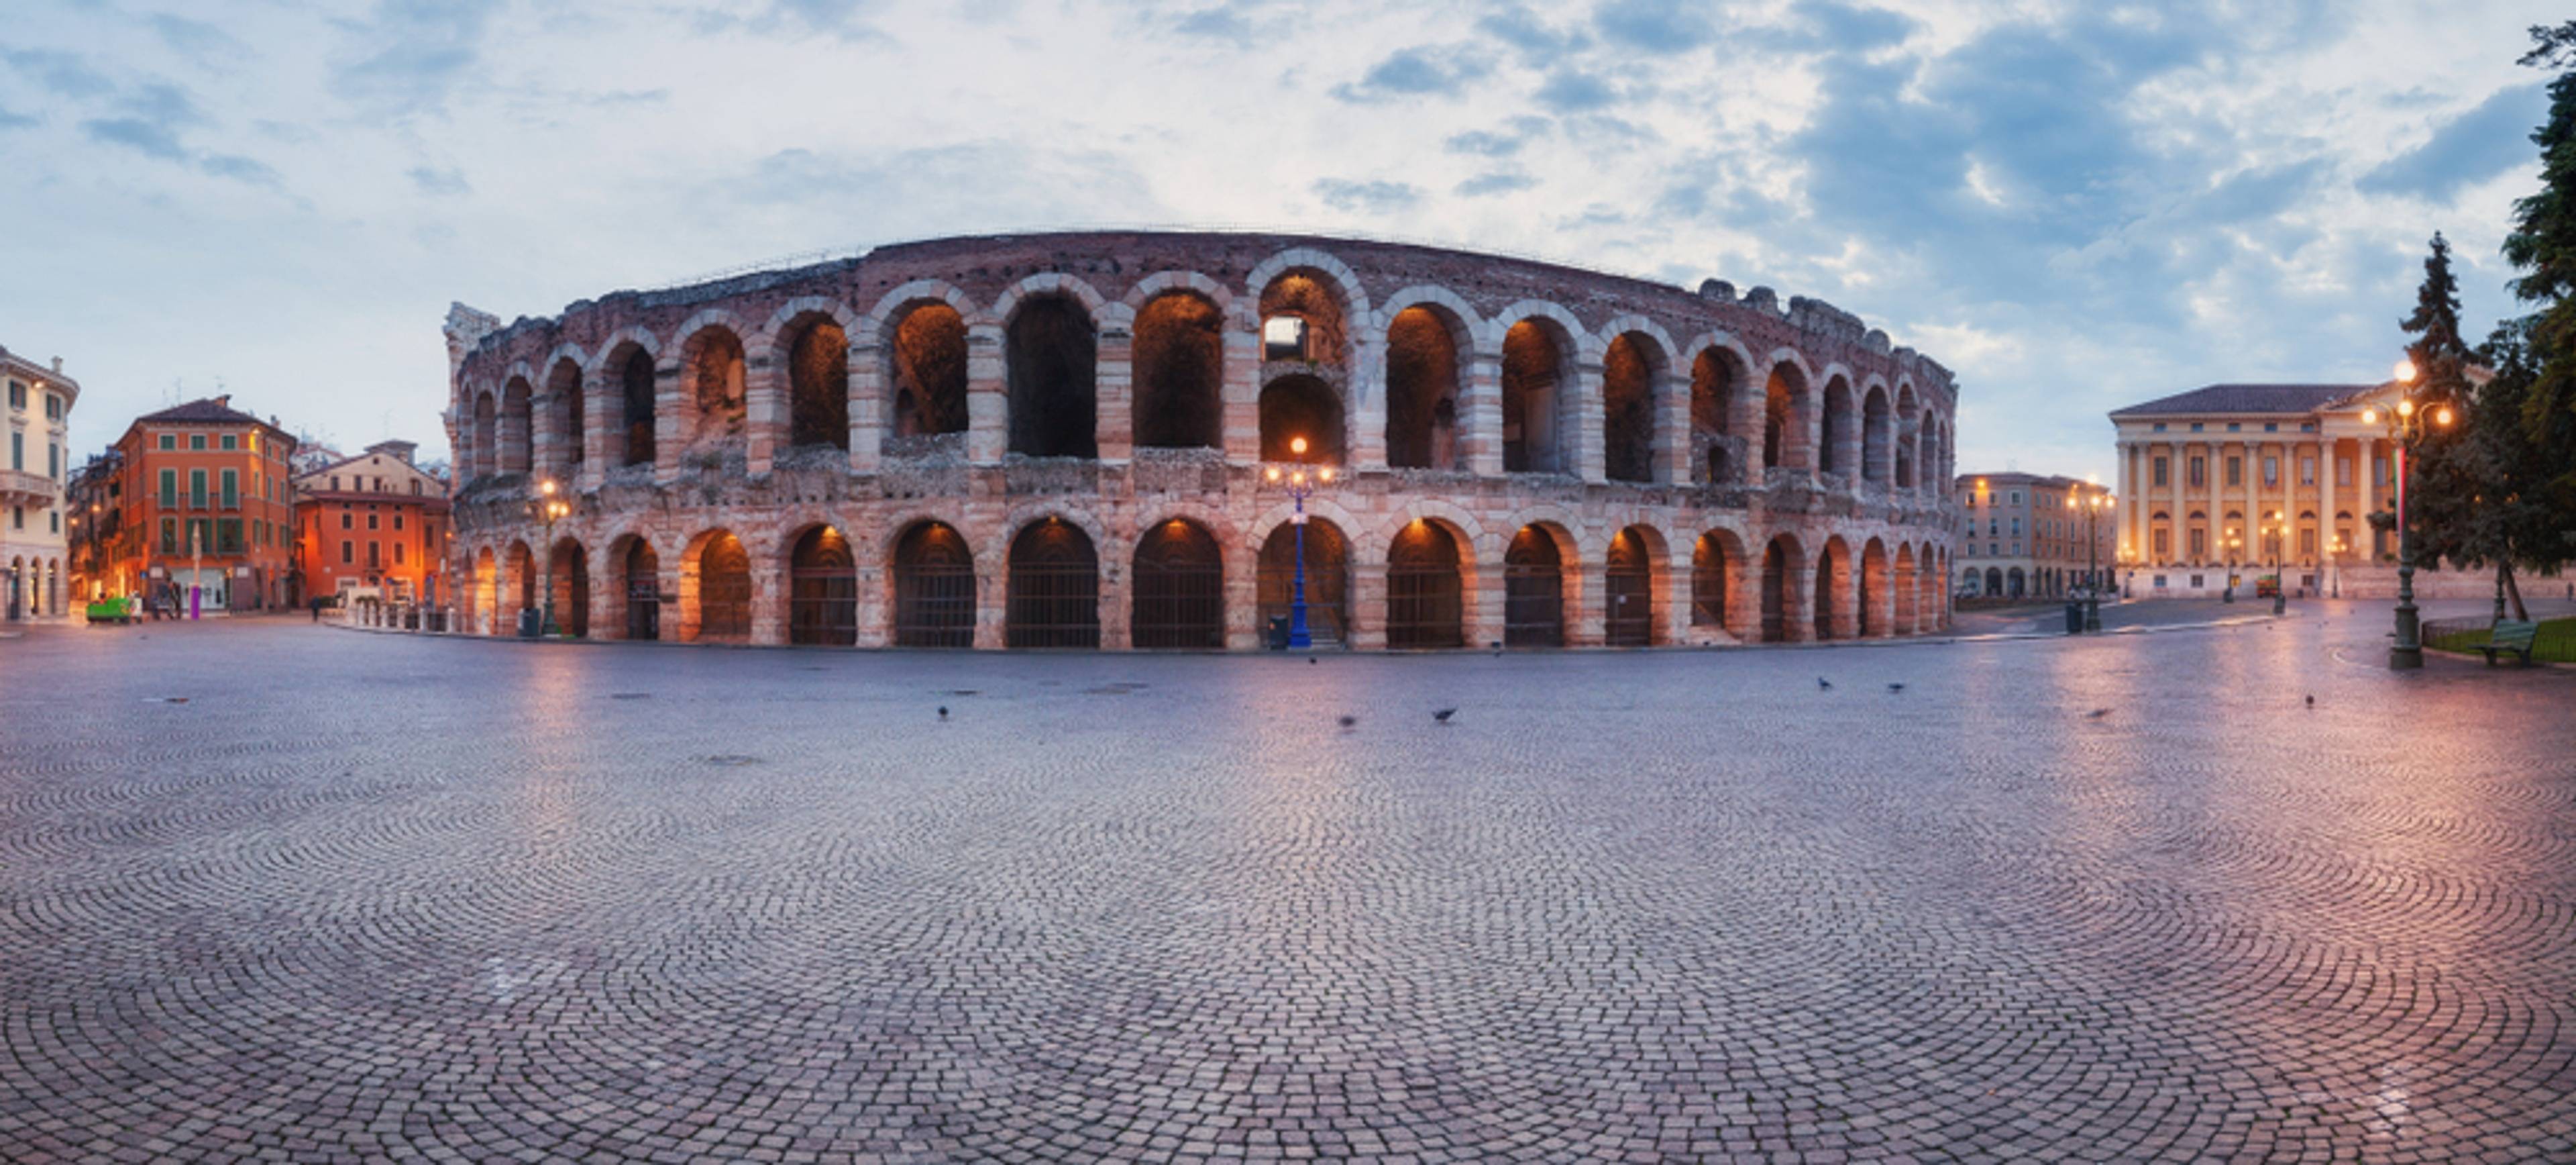 Arènes de Vérone (Arena di Verona)